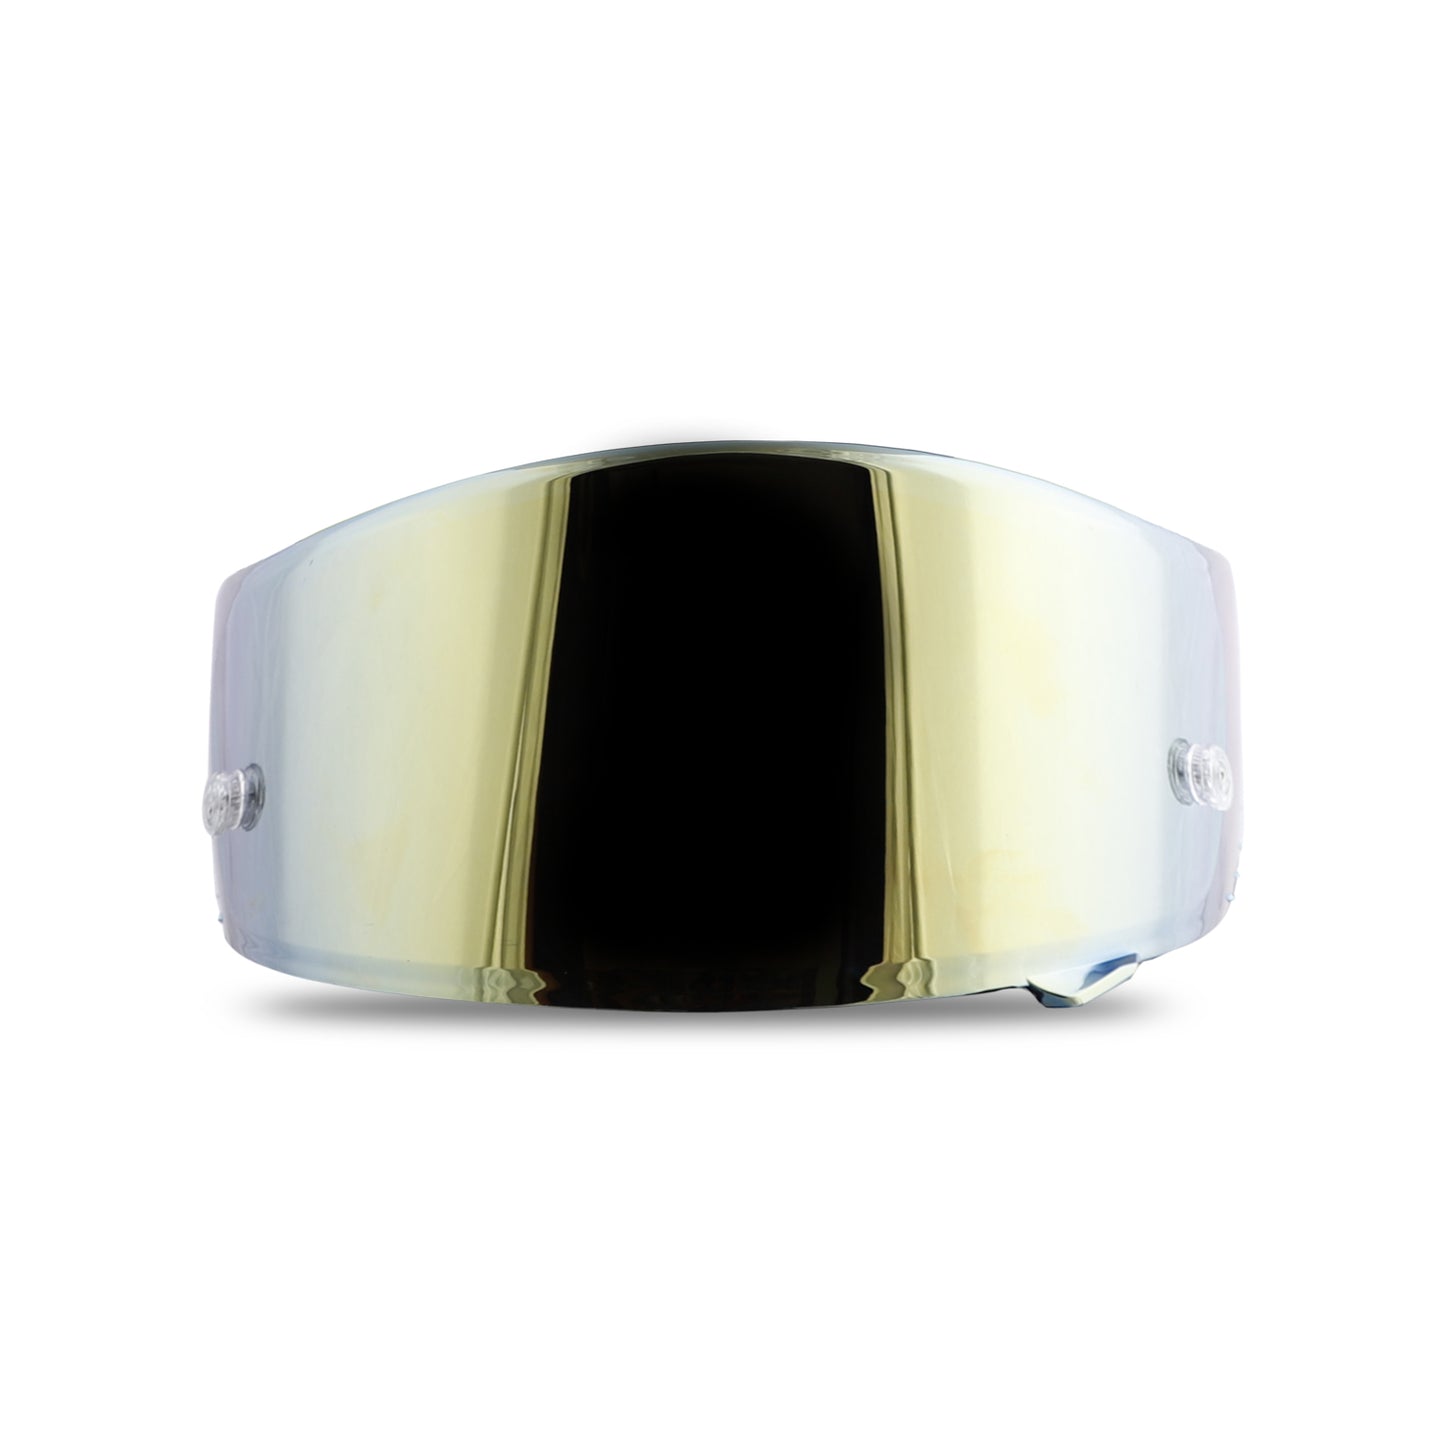 Steelbird SA-2 Helmet Visor Compatible for All SA-2 Model Helmets (Anti Fog Chrome Gold Visor)